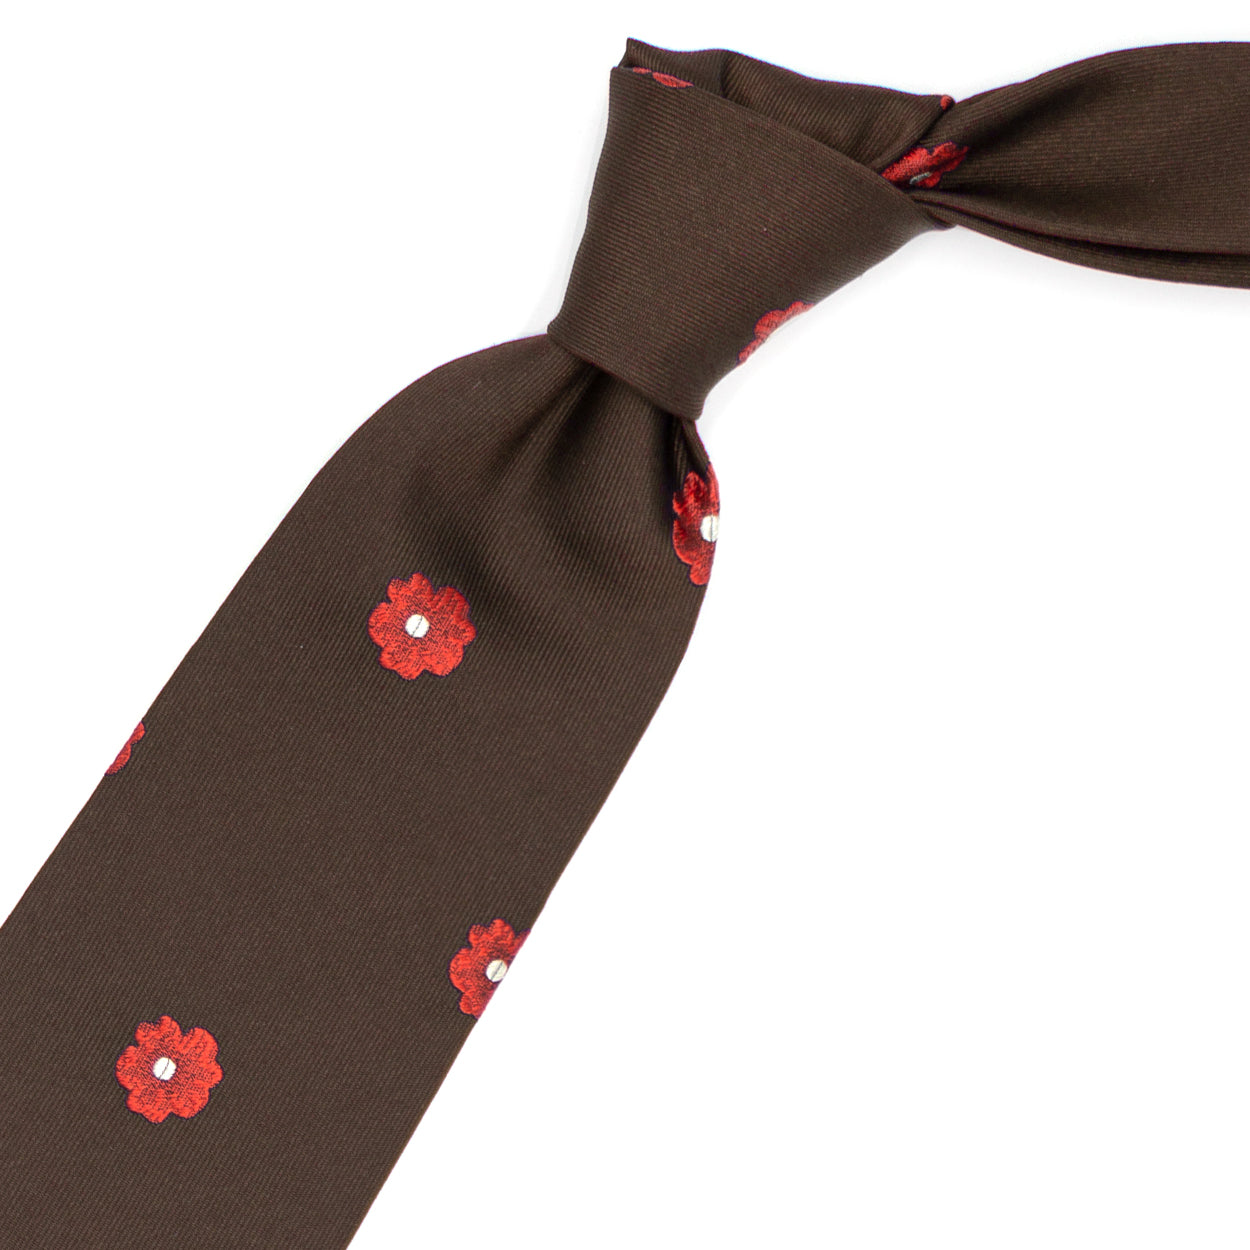 Cravatta marrone con fiori rossi e bianchi